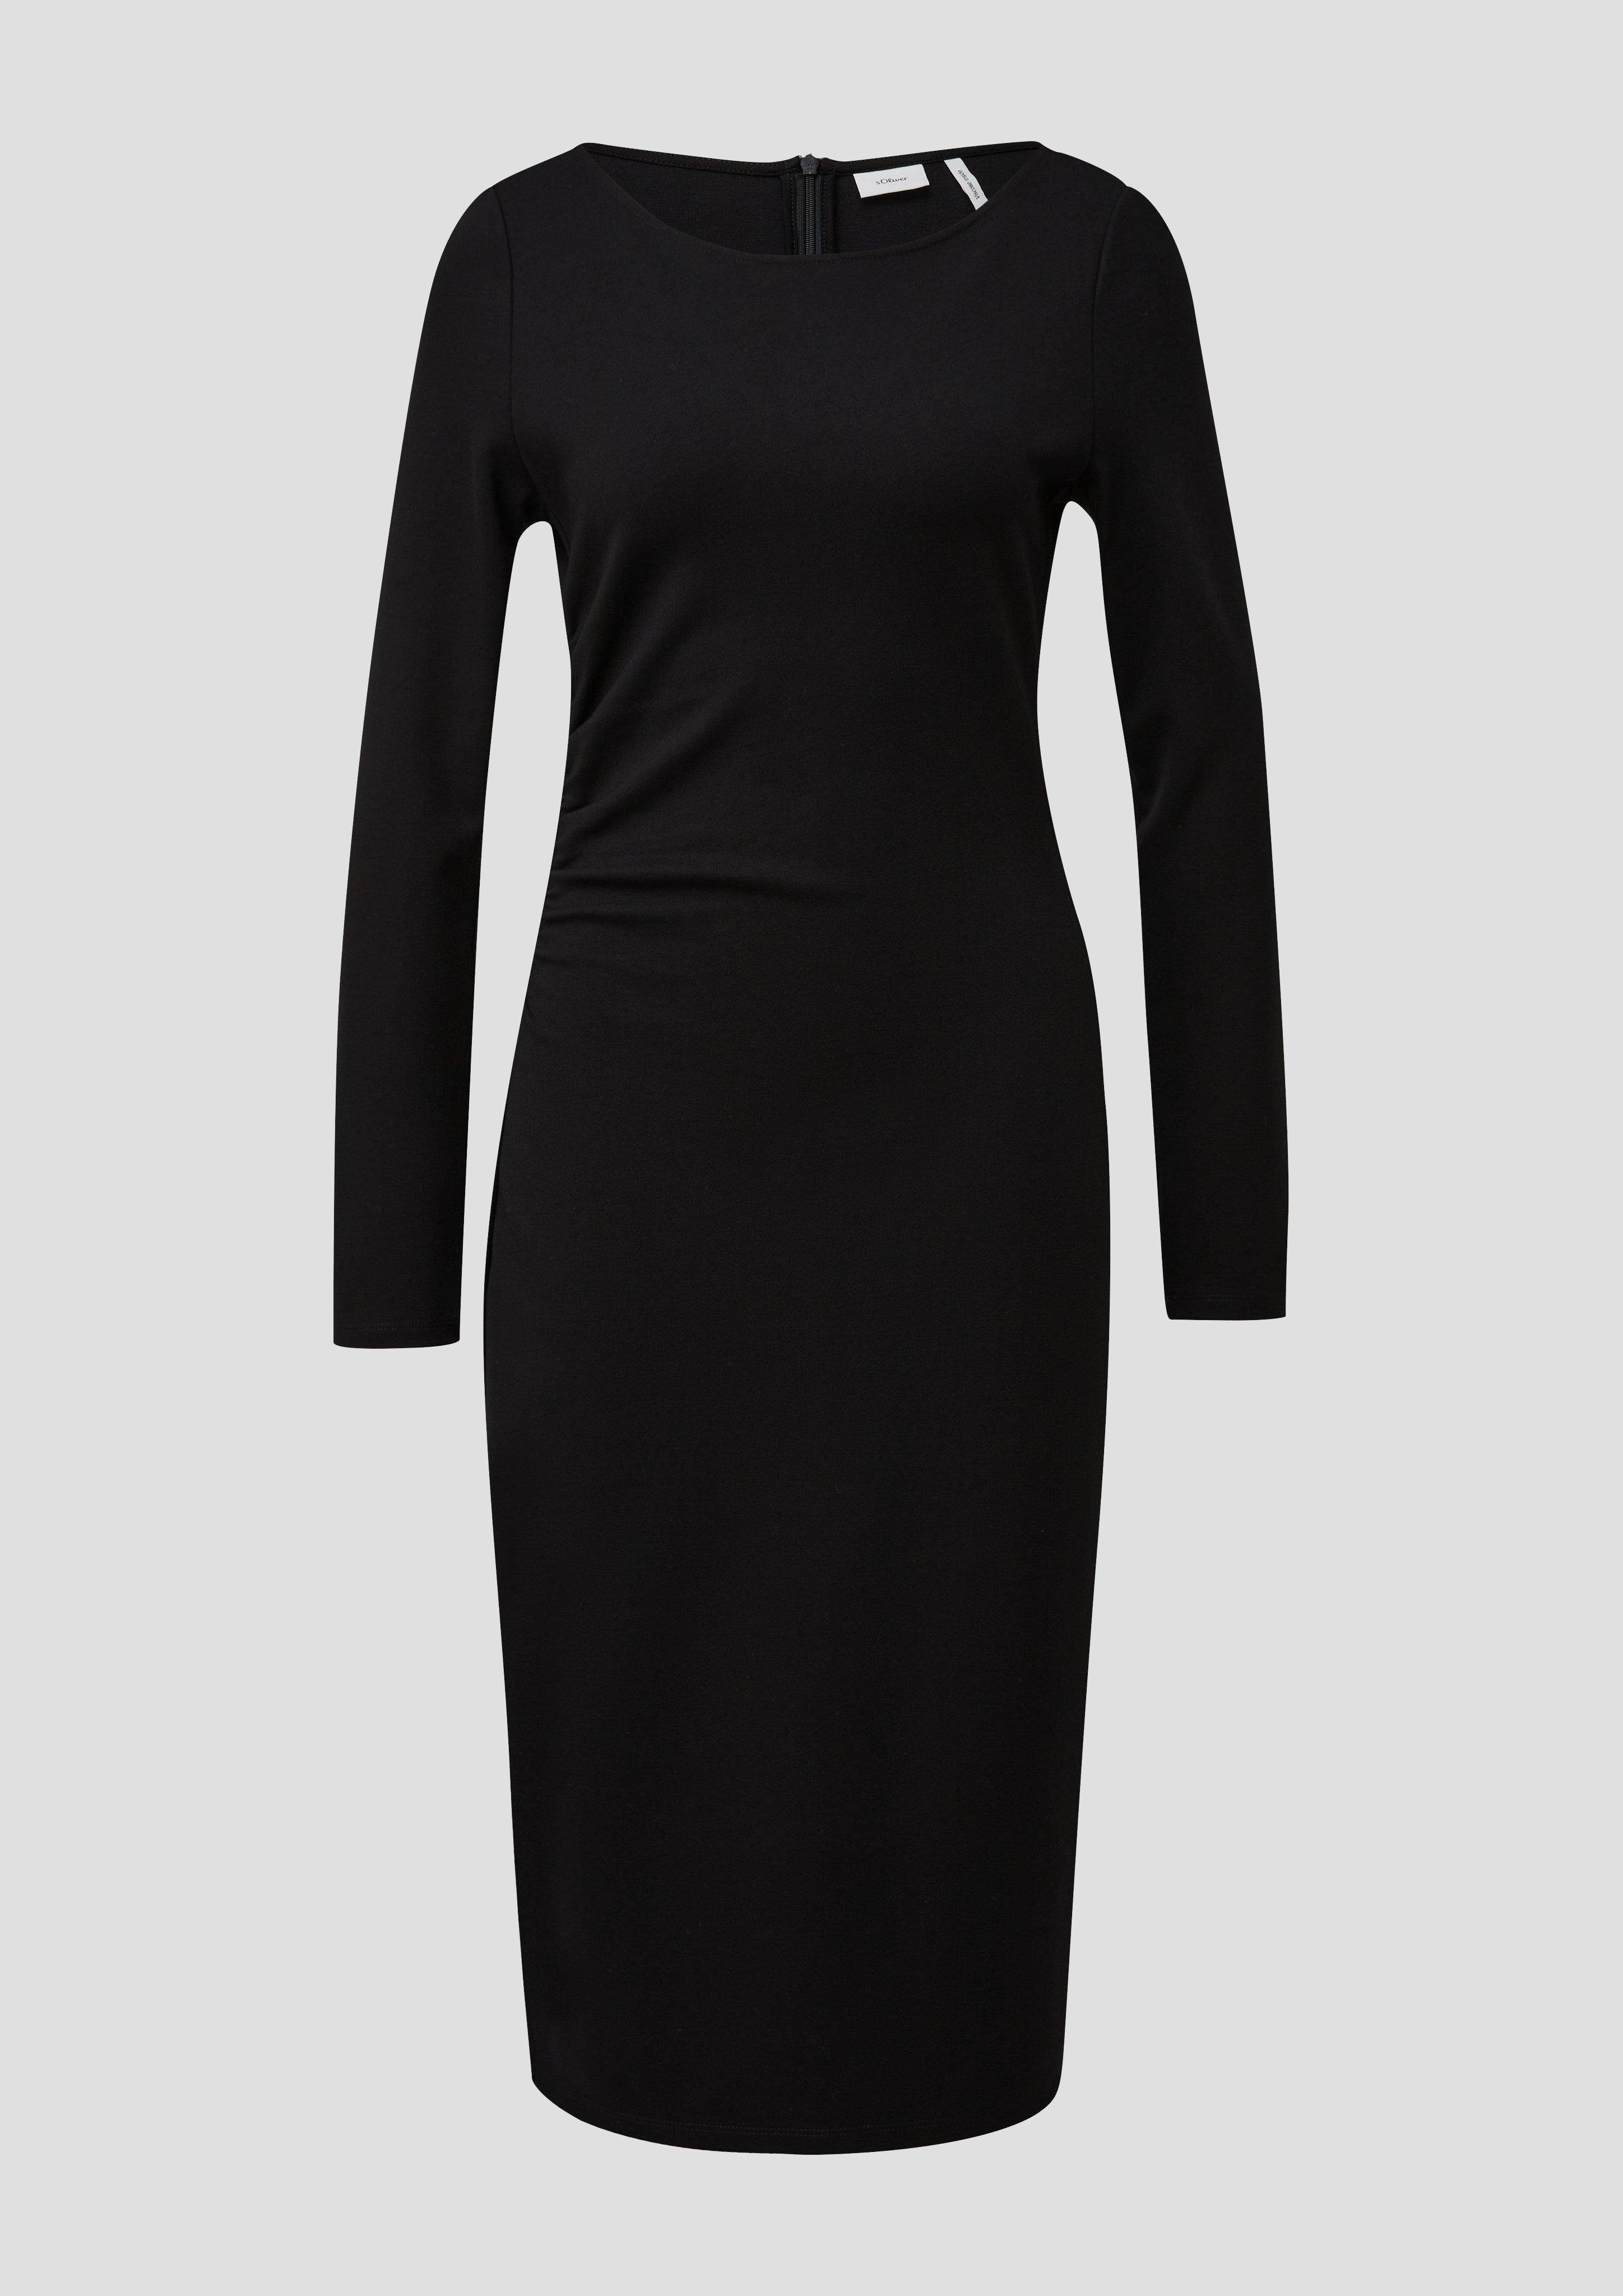 Jerseykleid BLACK aus schwarz Raffung Viskosemix Minikleid LABEL s.Oliver